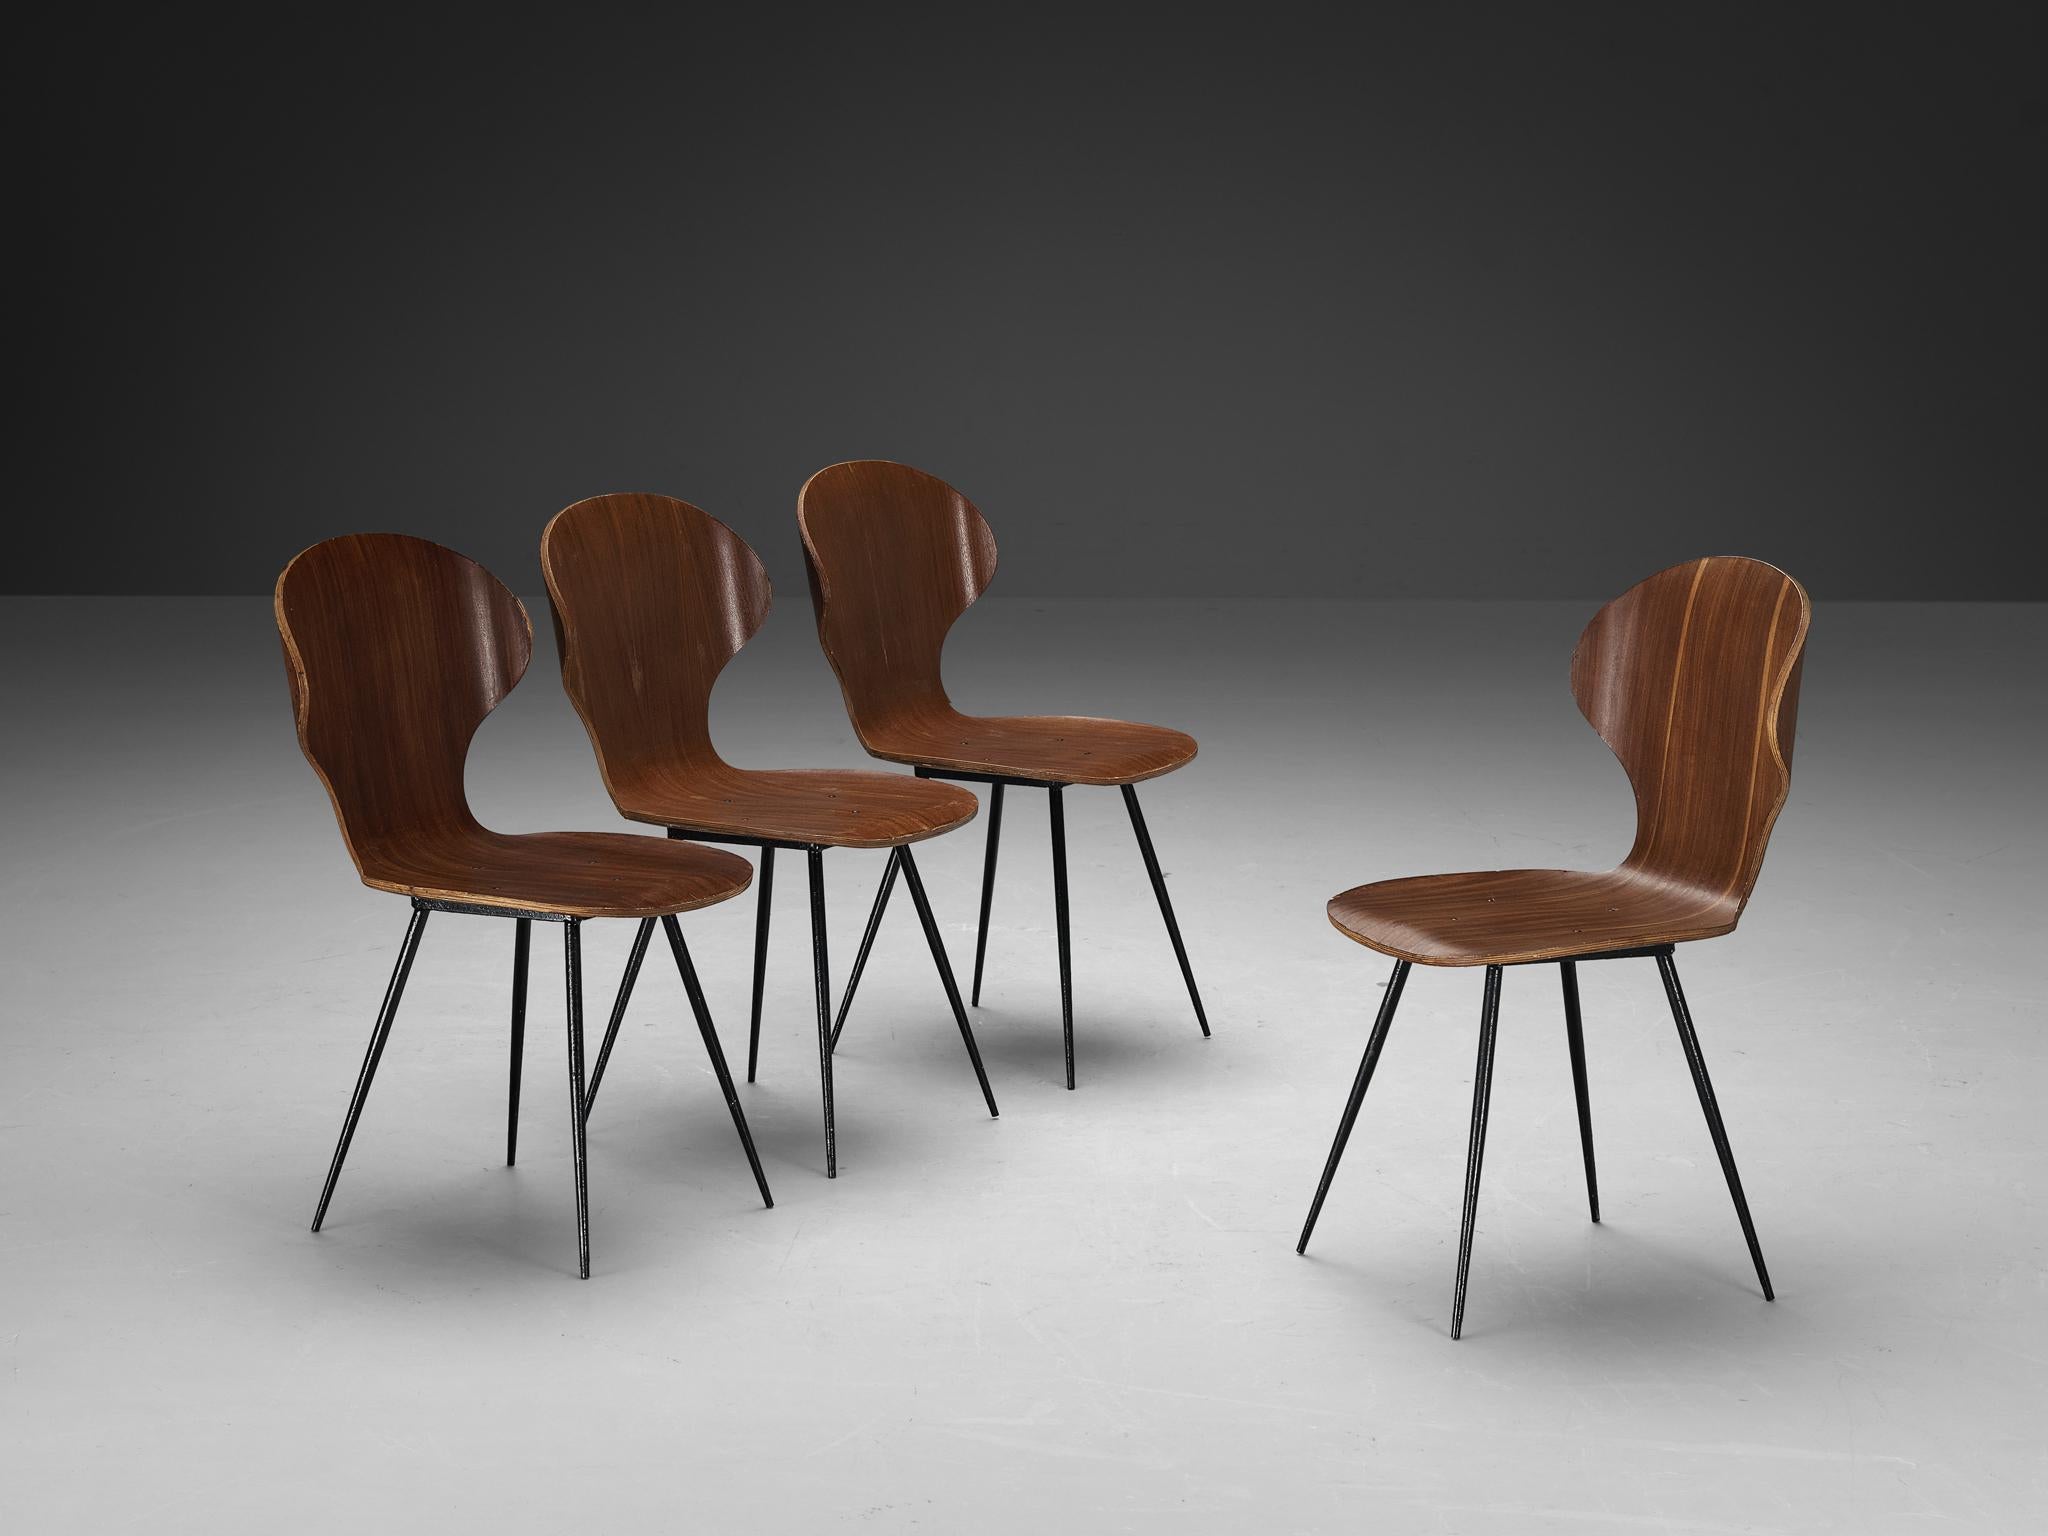 Carlo Ratti pour Industria Legni Curvati, ensemble de quatre chaises de salle à manger, contreplaqué avec un finisseur en teck et métal, Italie, années 1970.

Élégant ensemble de chaises de salle à manger italiennes avec structure en métal et sièges